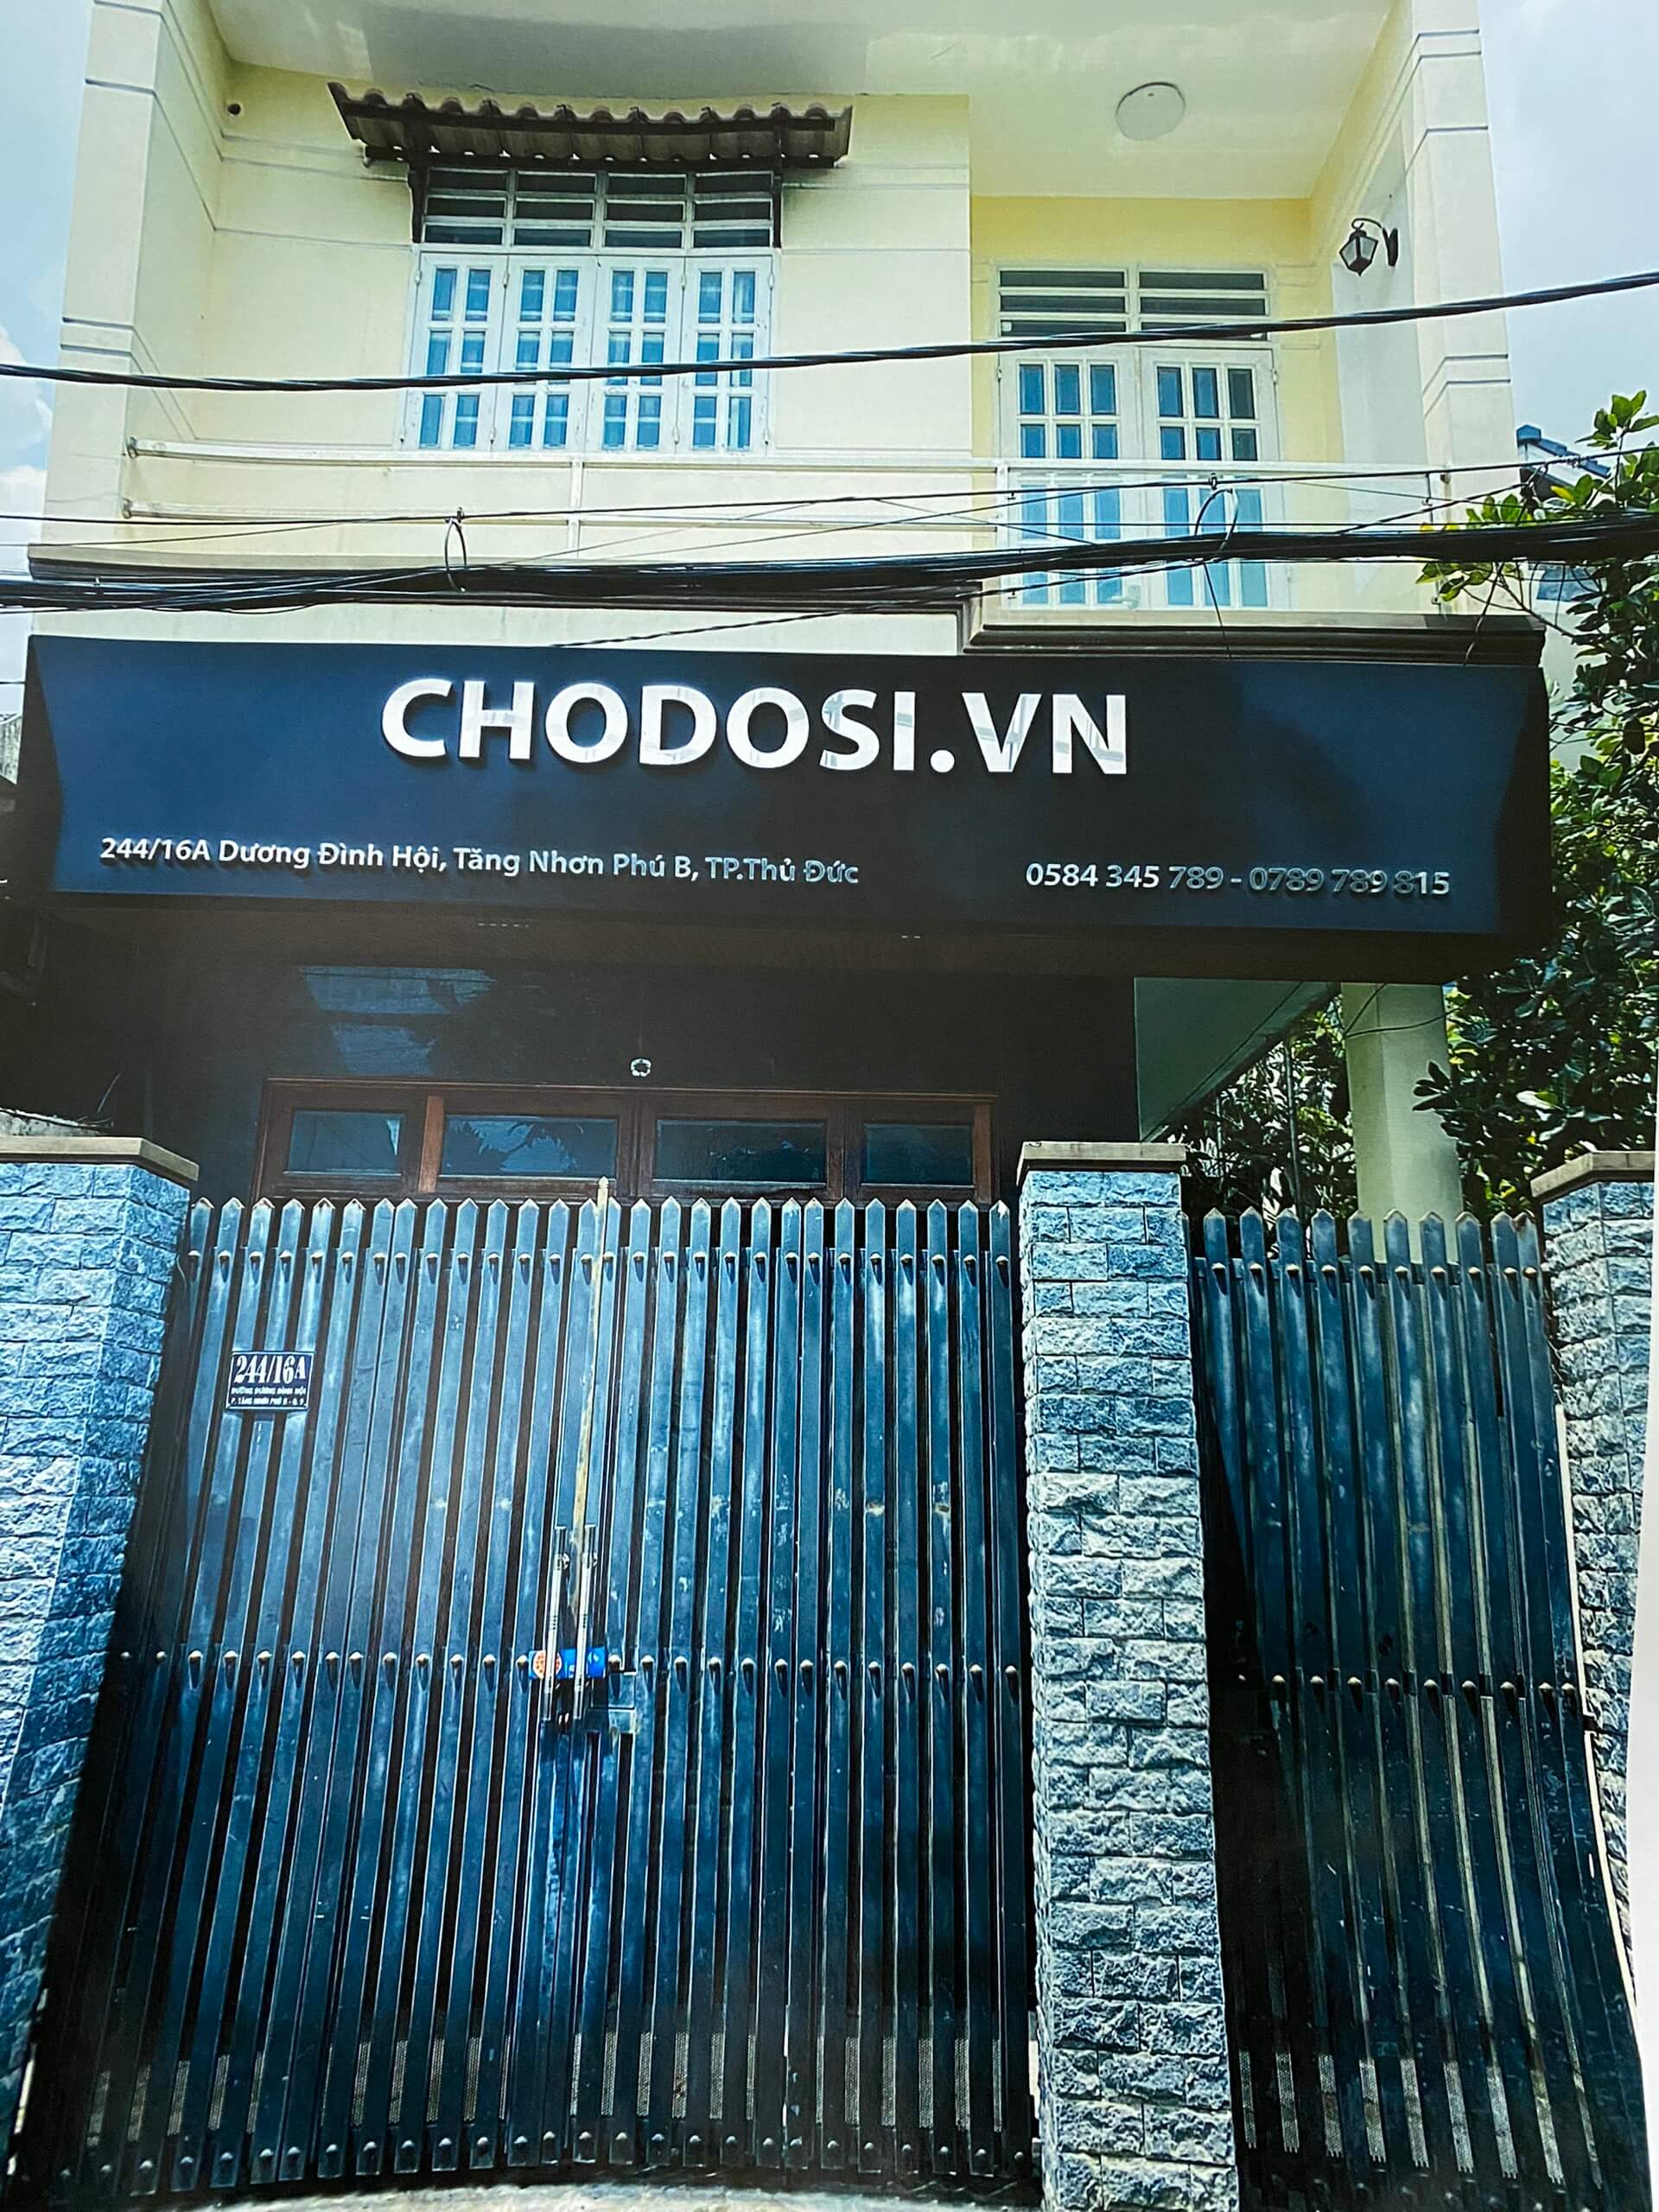 Kho hàng Chodosi.vn